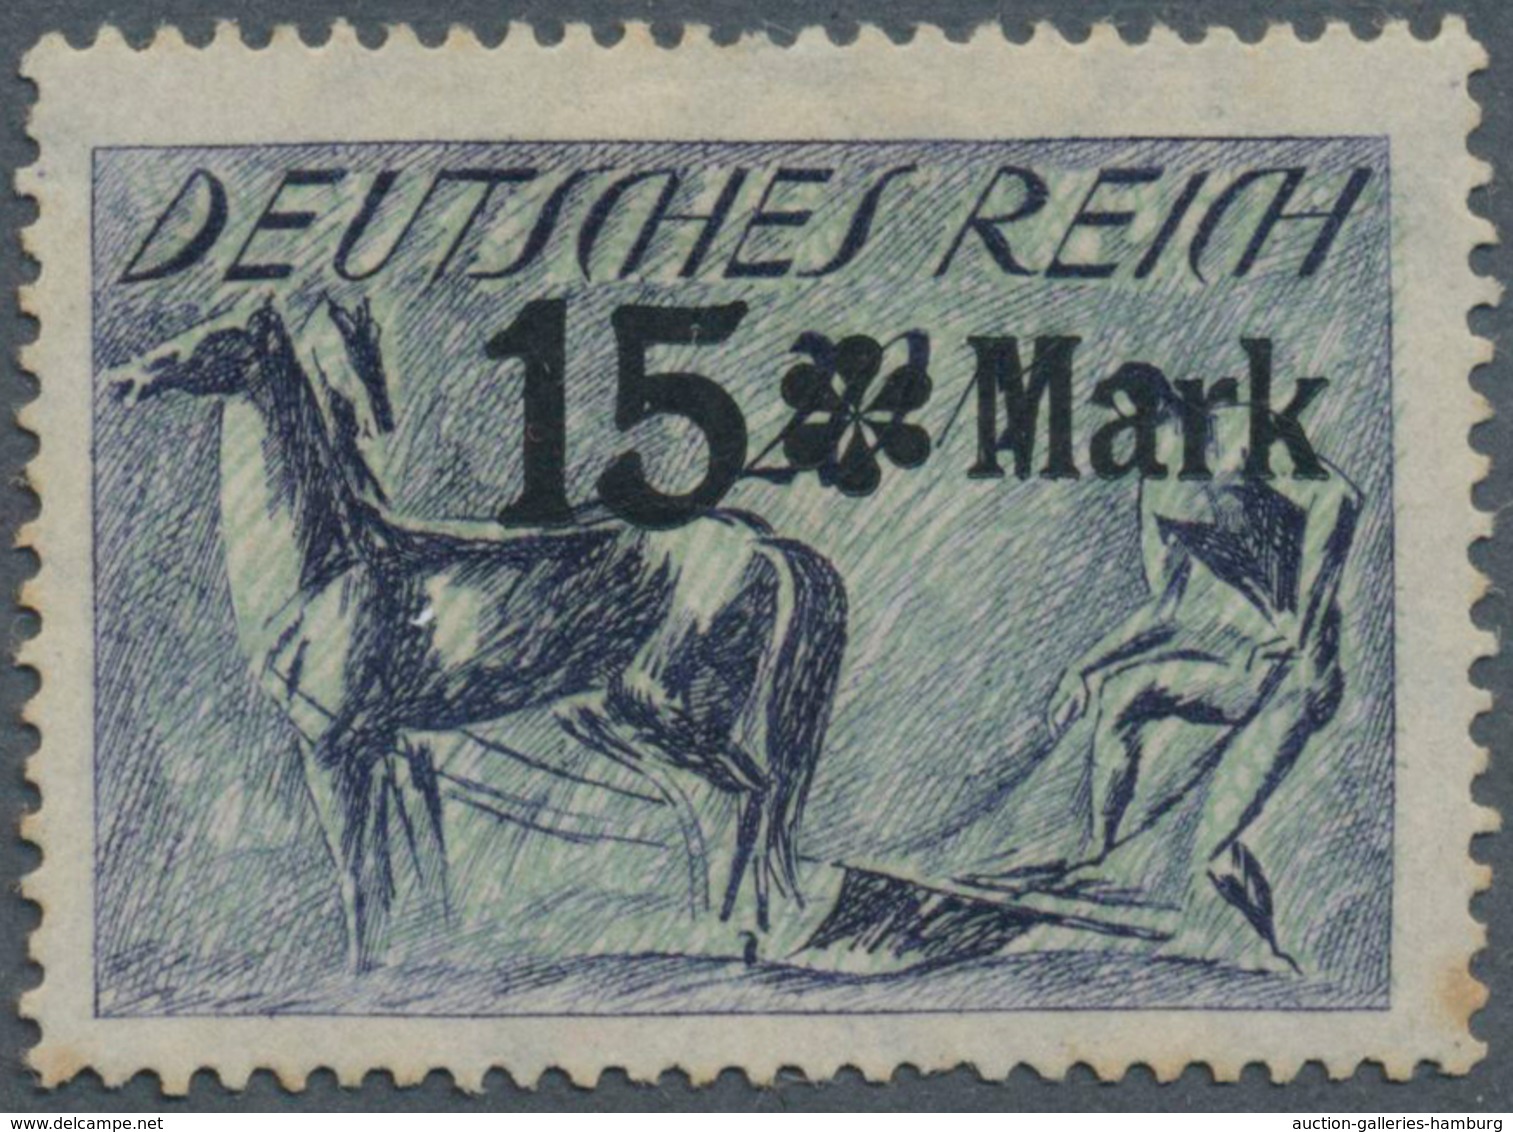 Deutsches Reich - Inflation: 1922: '15 * Mark' - Schwarzer Aufdruck Auf 20 Mk. Pflüger, Aufdruck-Ess - Covers & Documents